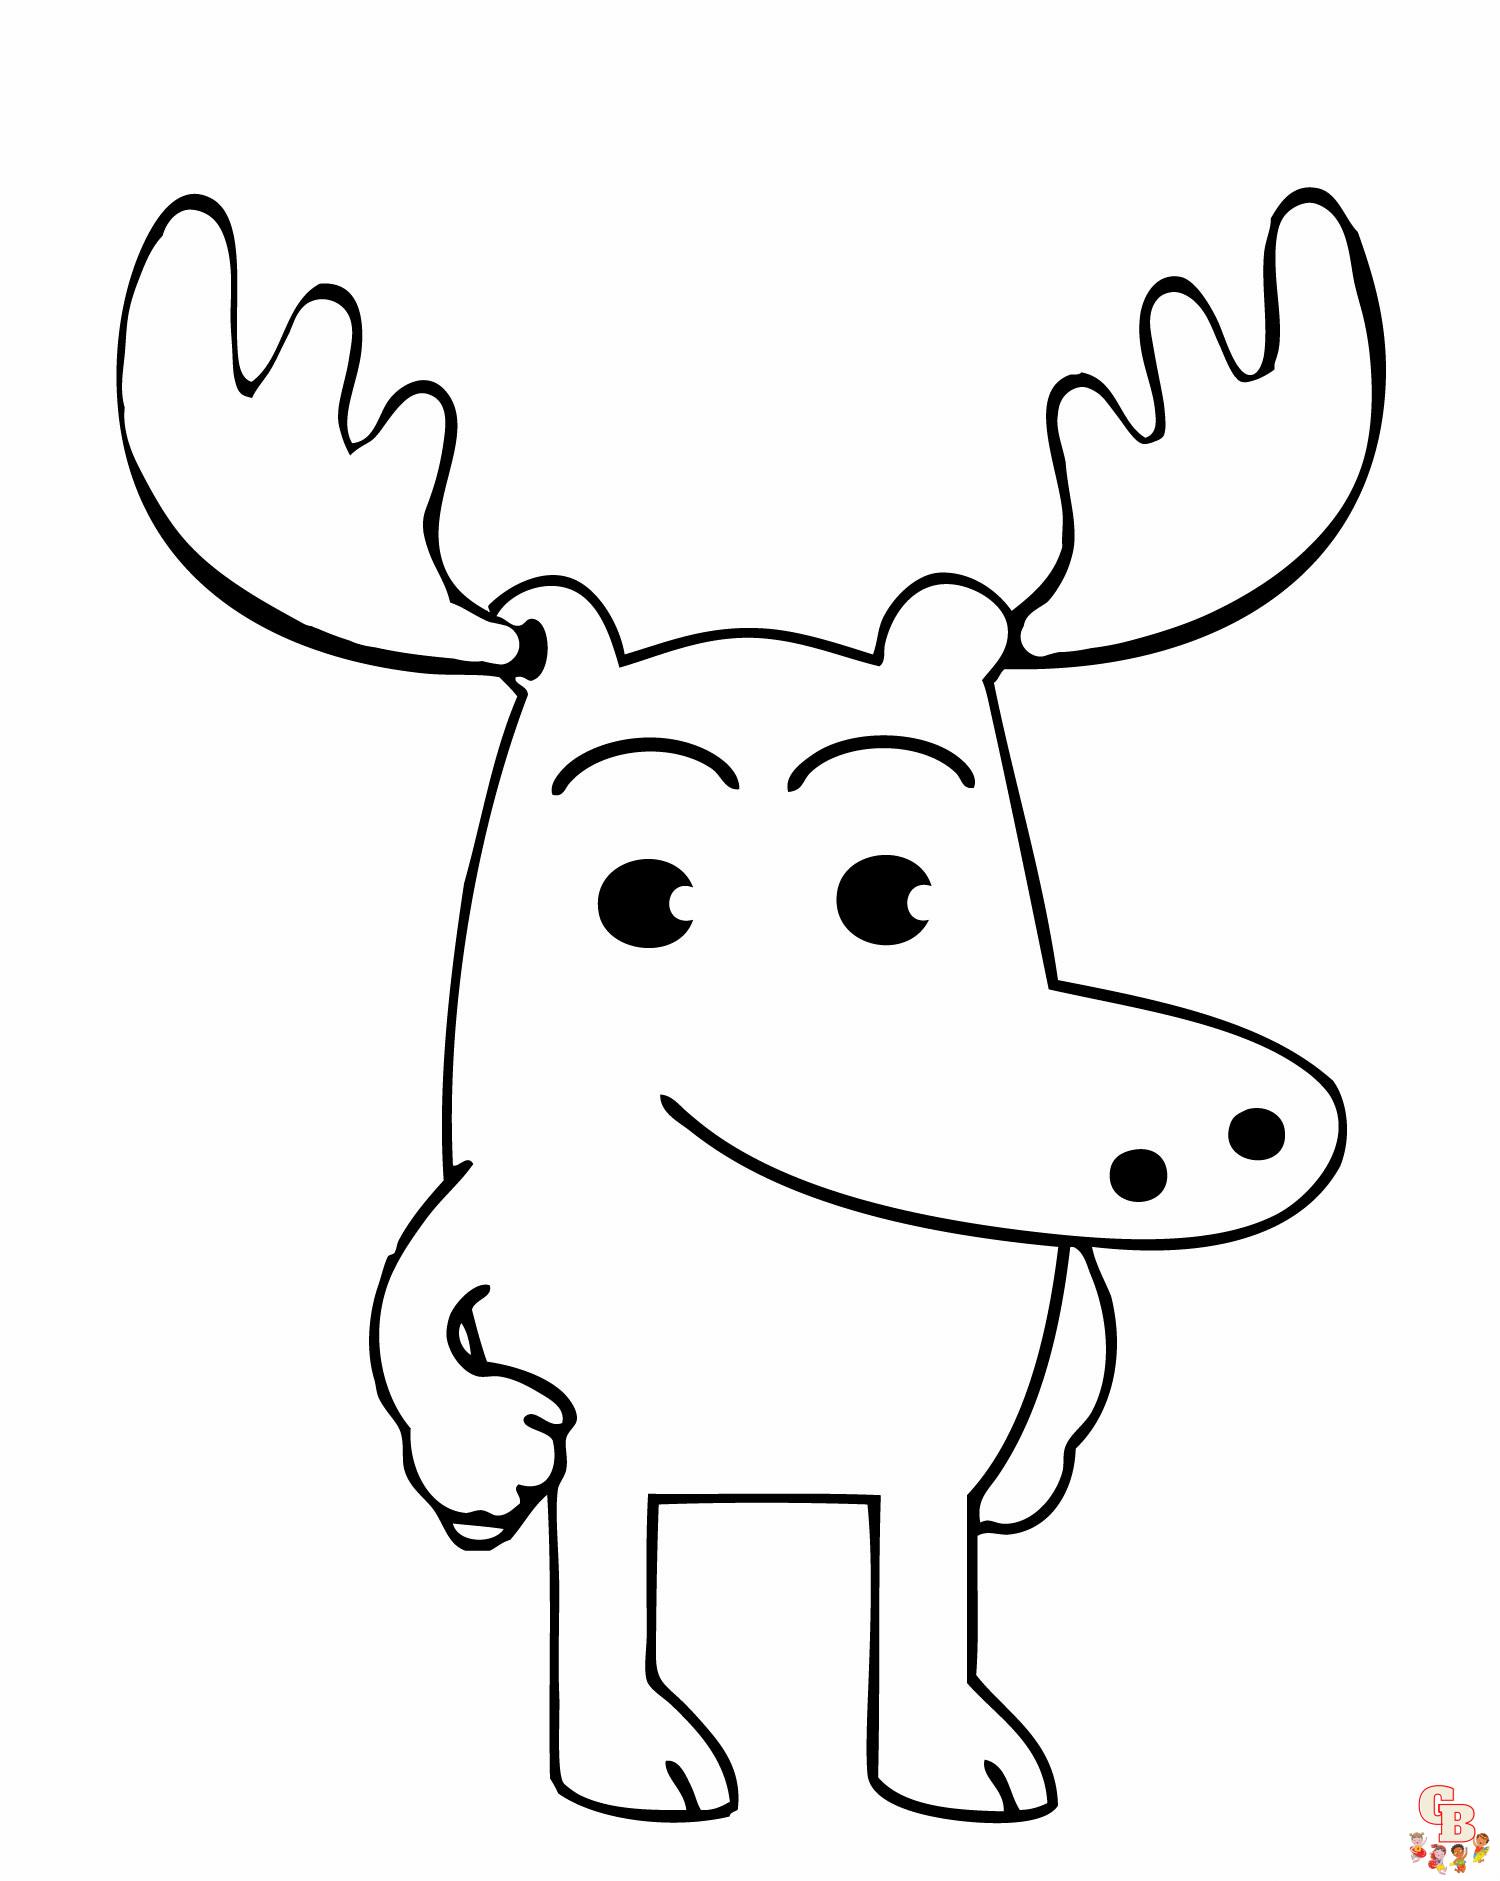 Moose Coloring Pages - Dapat Dicetak, Gratis, dan Mudah | GBcoloring